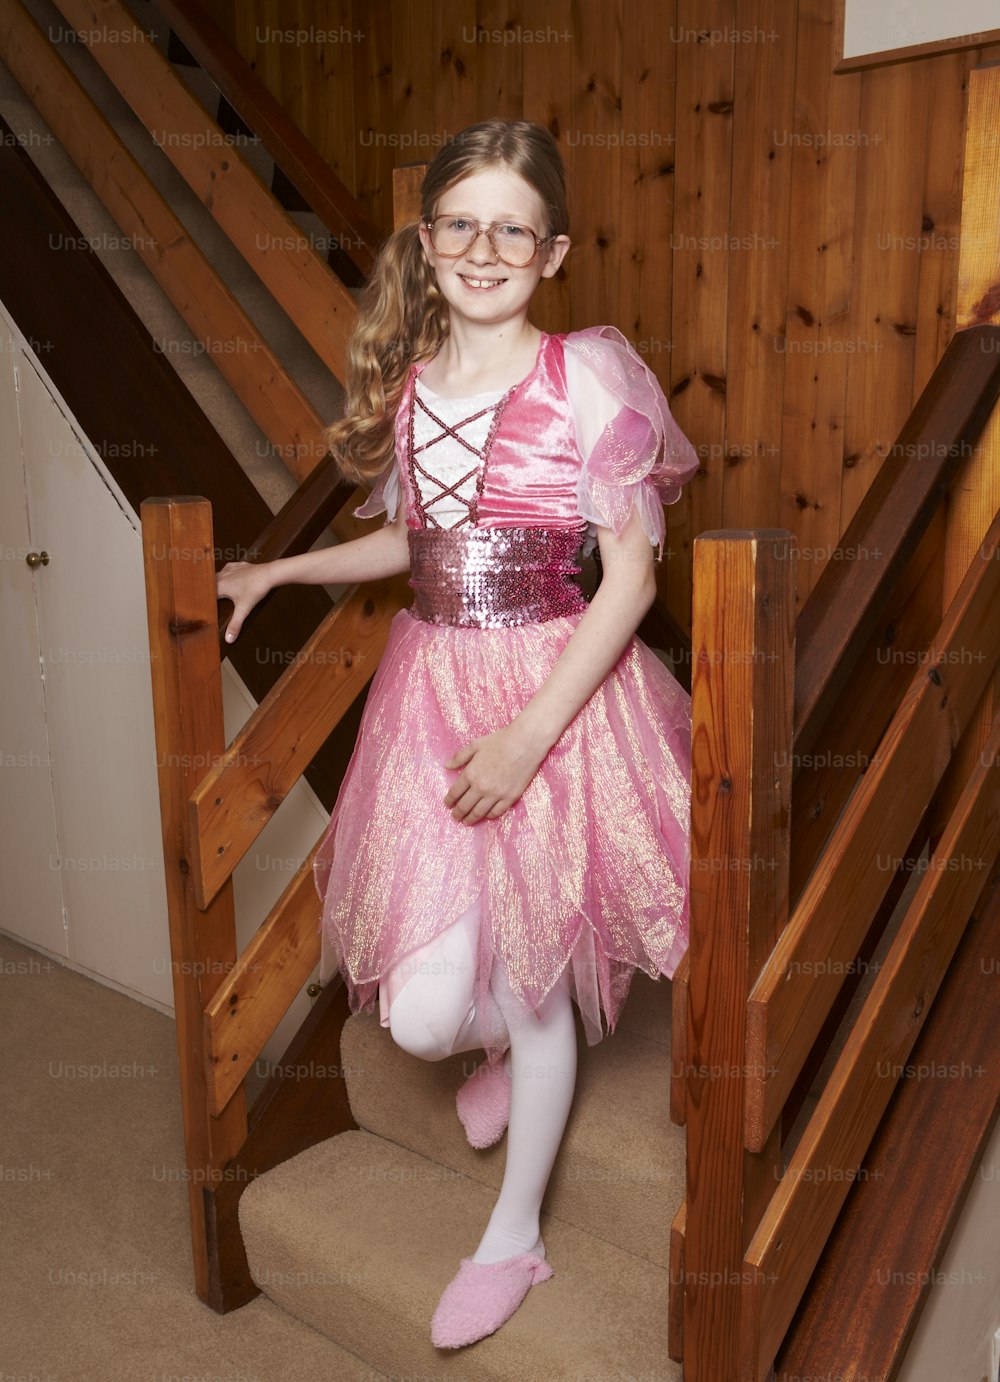 Ein kleines Mädchen in einem rosa Kleid, das auf einer Treppe steht